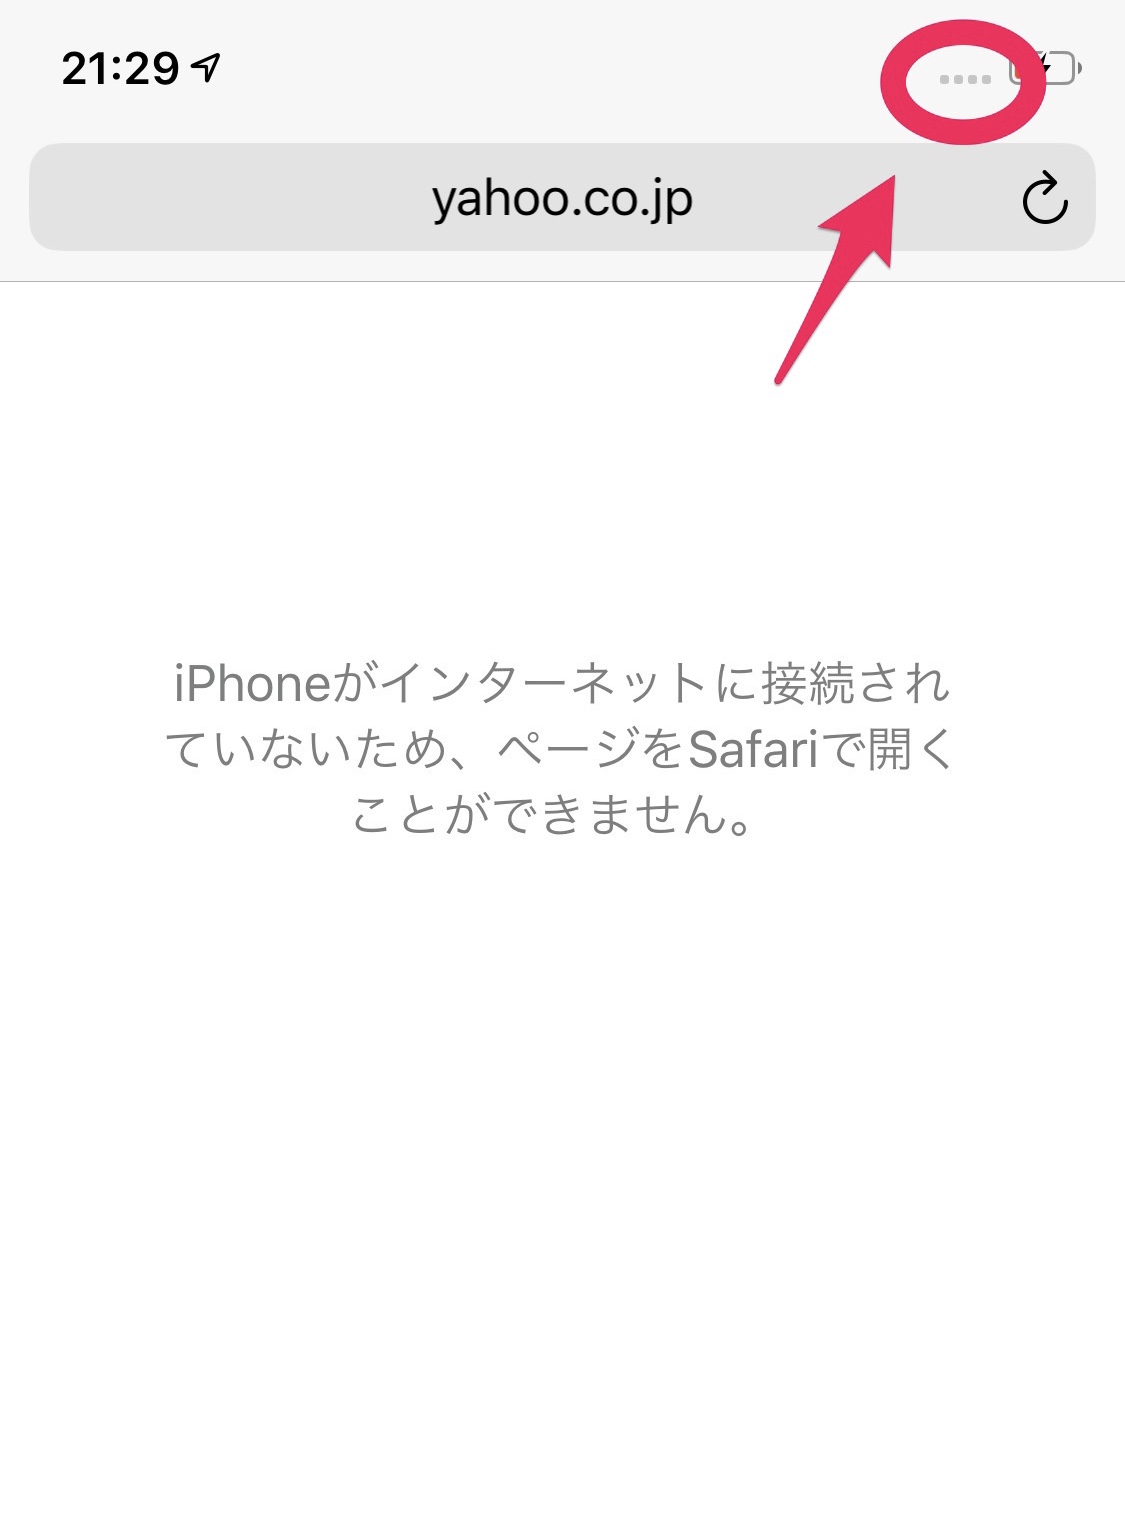 Iphoneのモバイルデータ通信ができない 試したい対処法8選 Apptopi